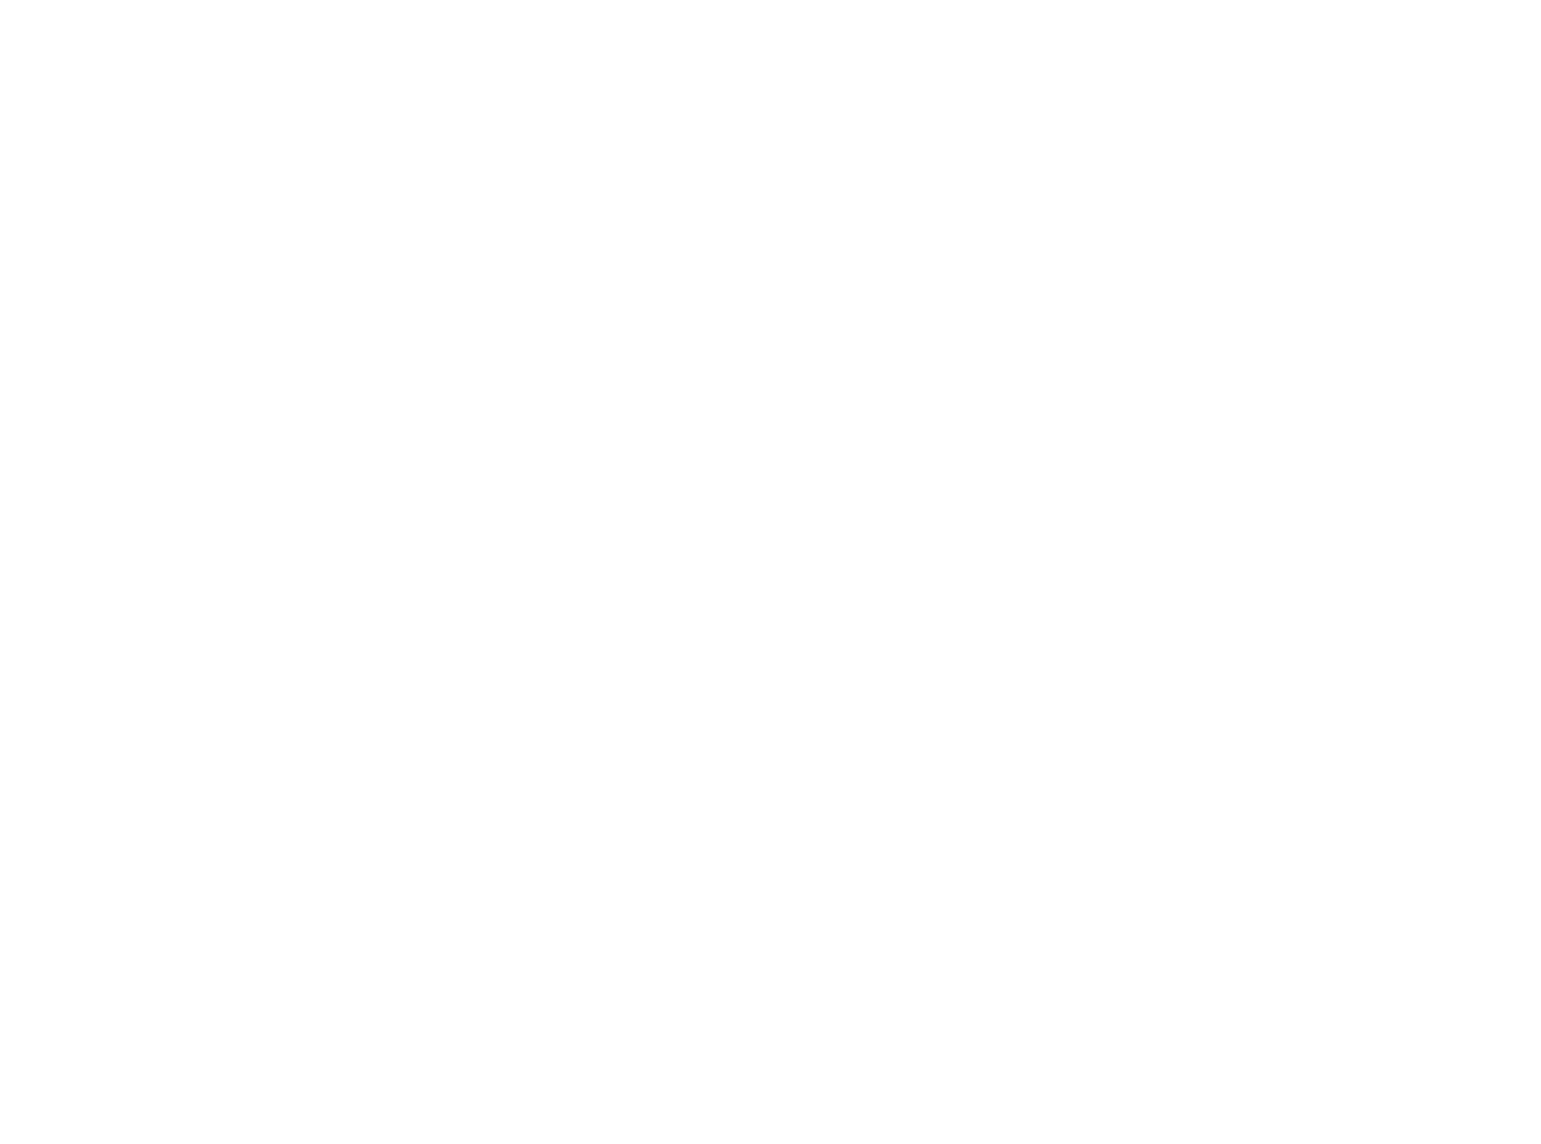 Evolv Technologies logo for dark backgrounds (transparent PNG)